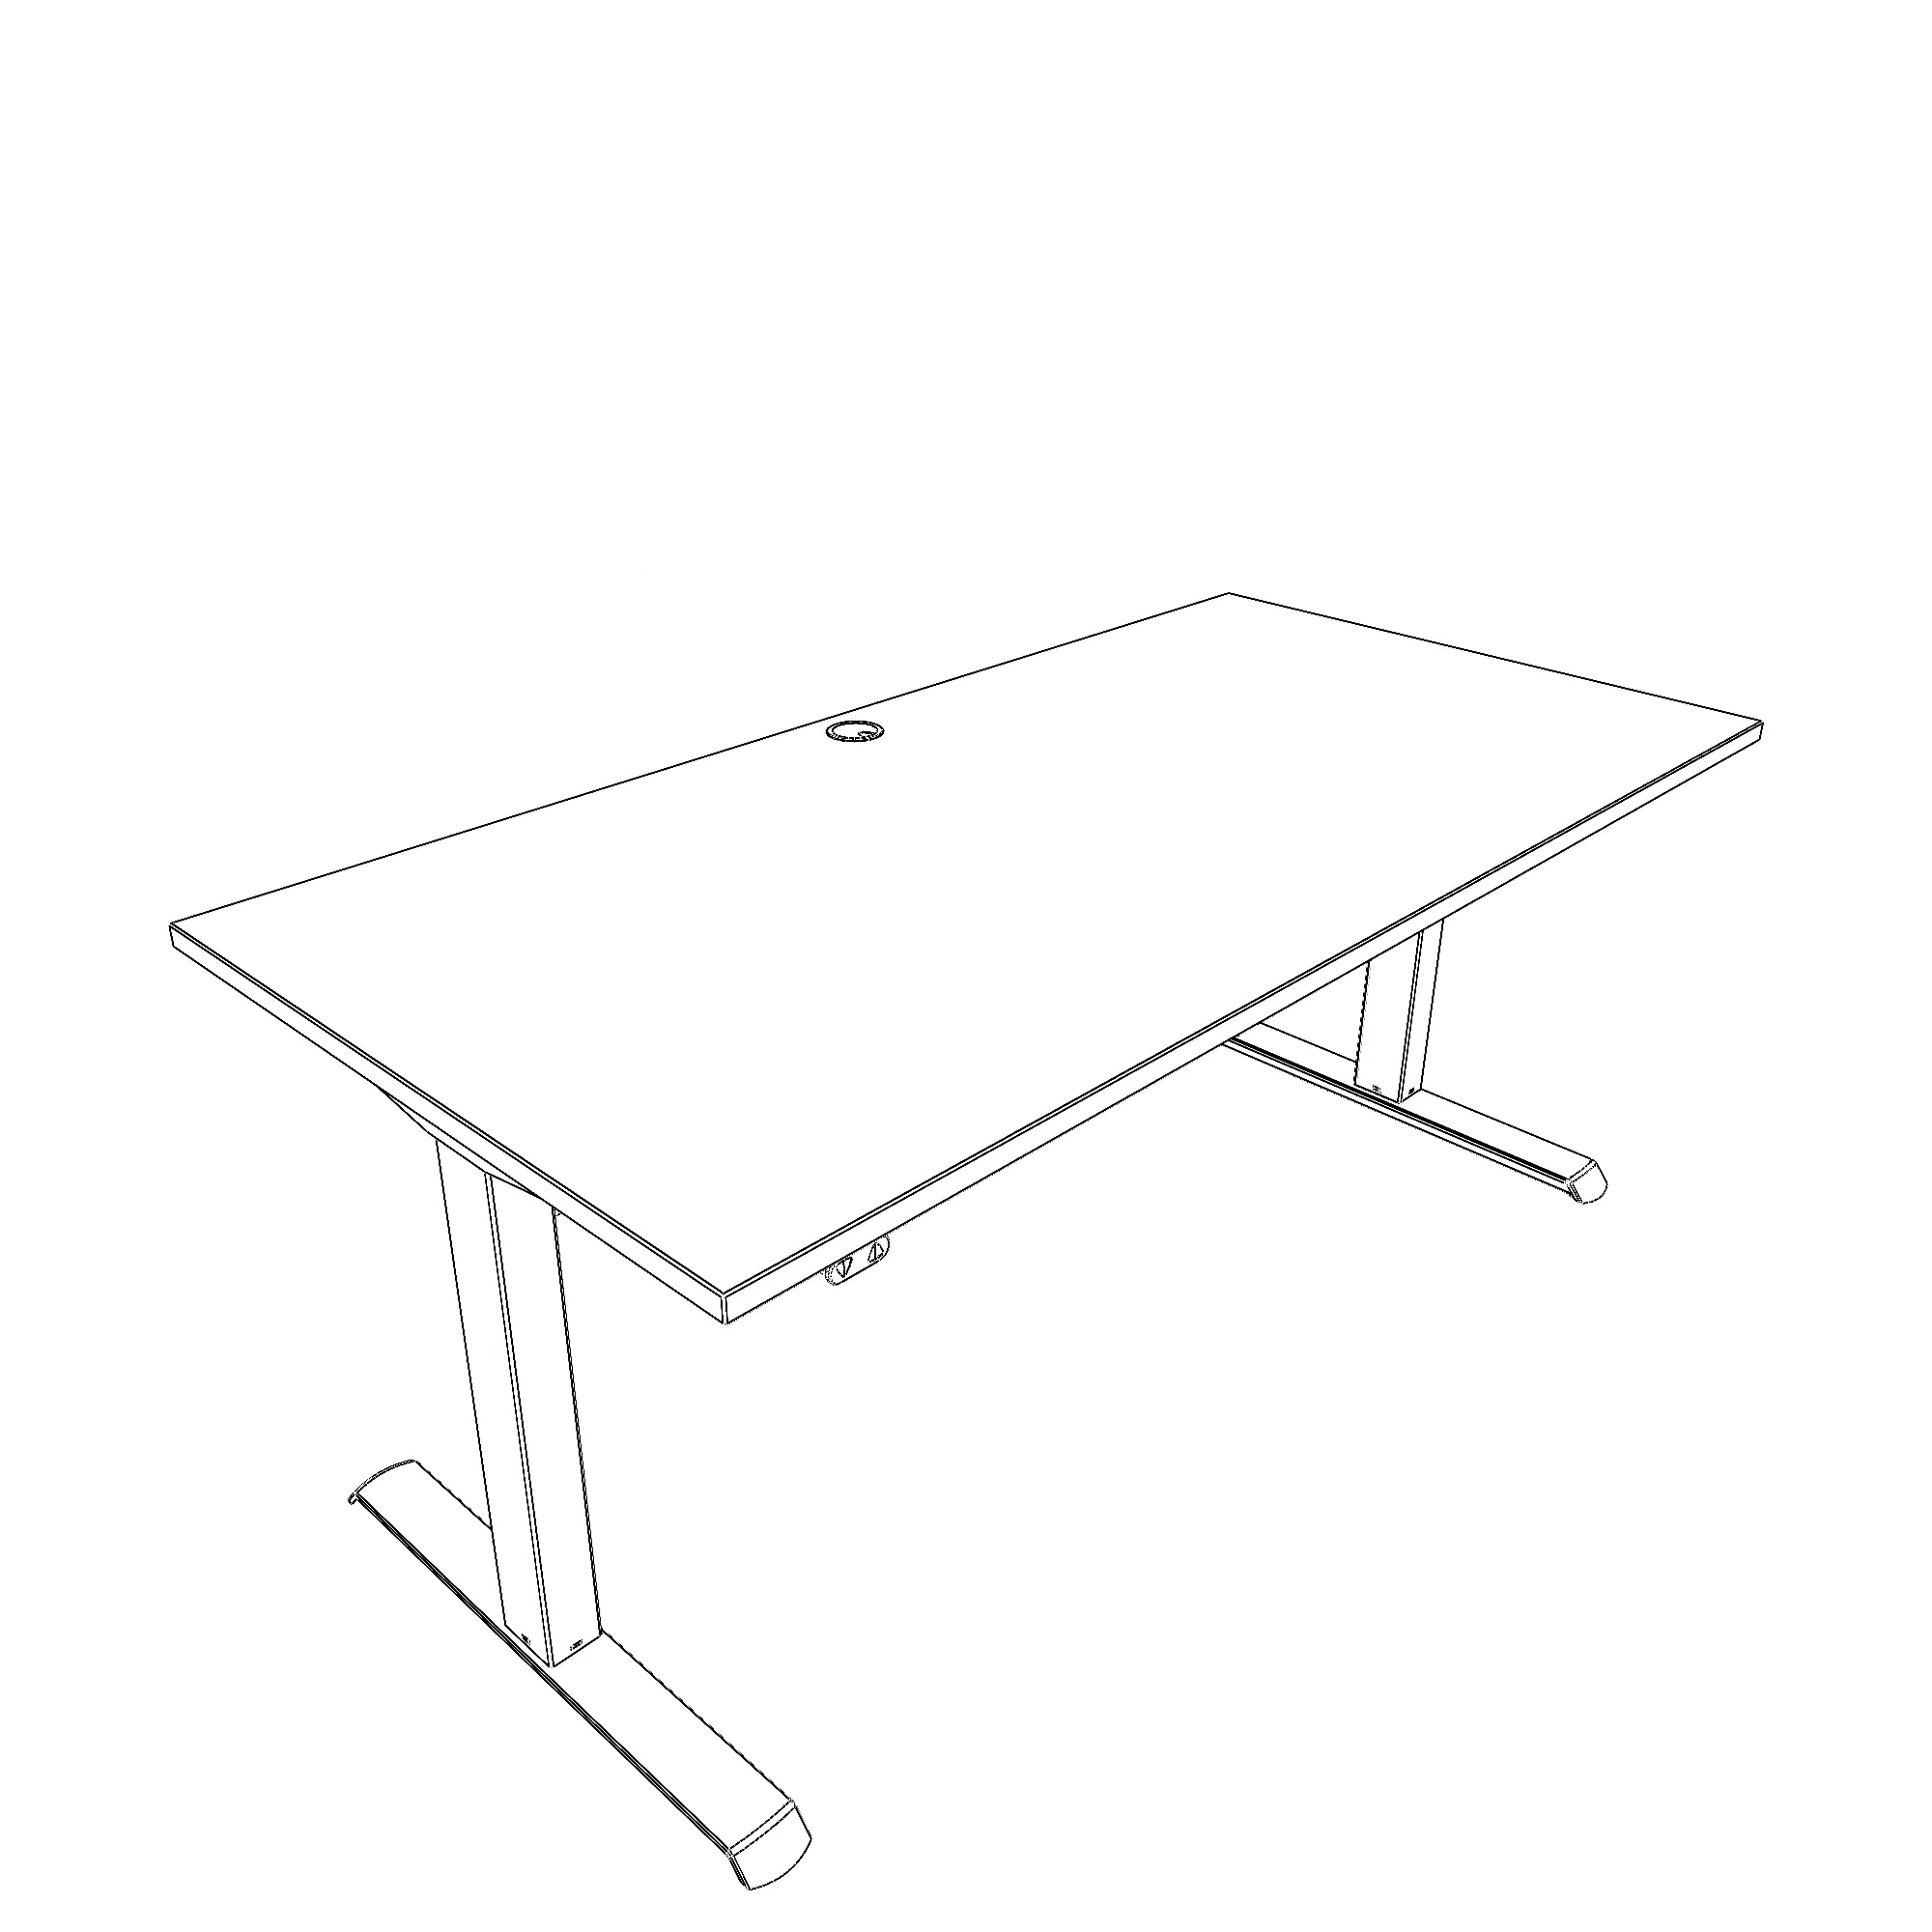 Schreibtisch steh/sitz | 160x80 cm | Nussbaum mit schwarzem Gestell